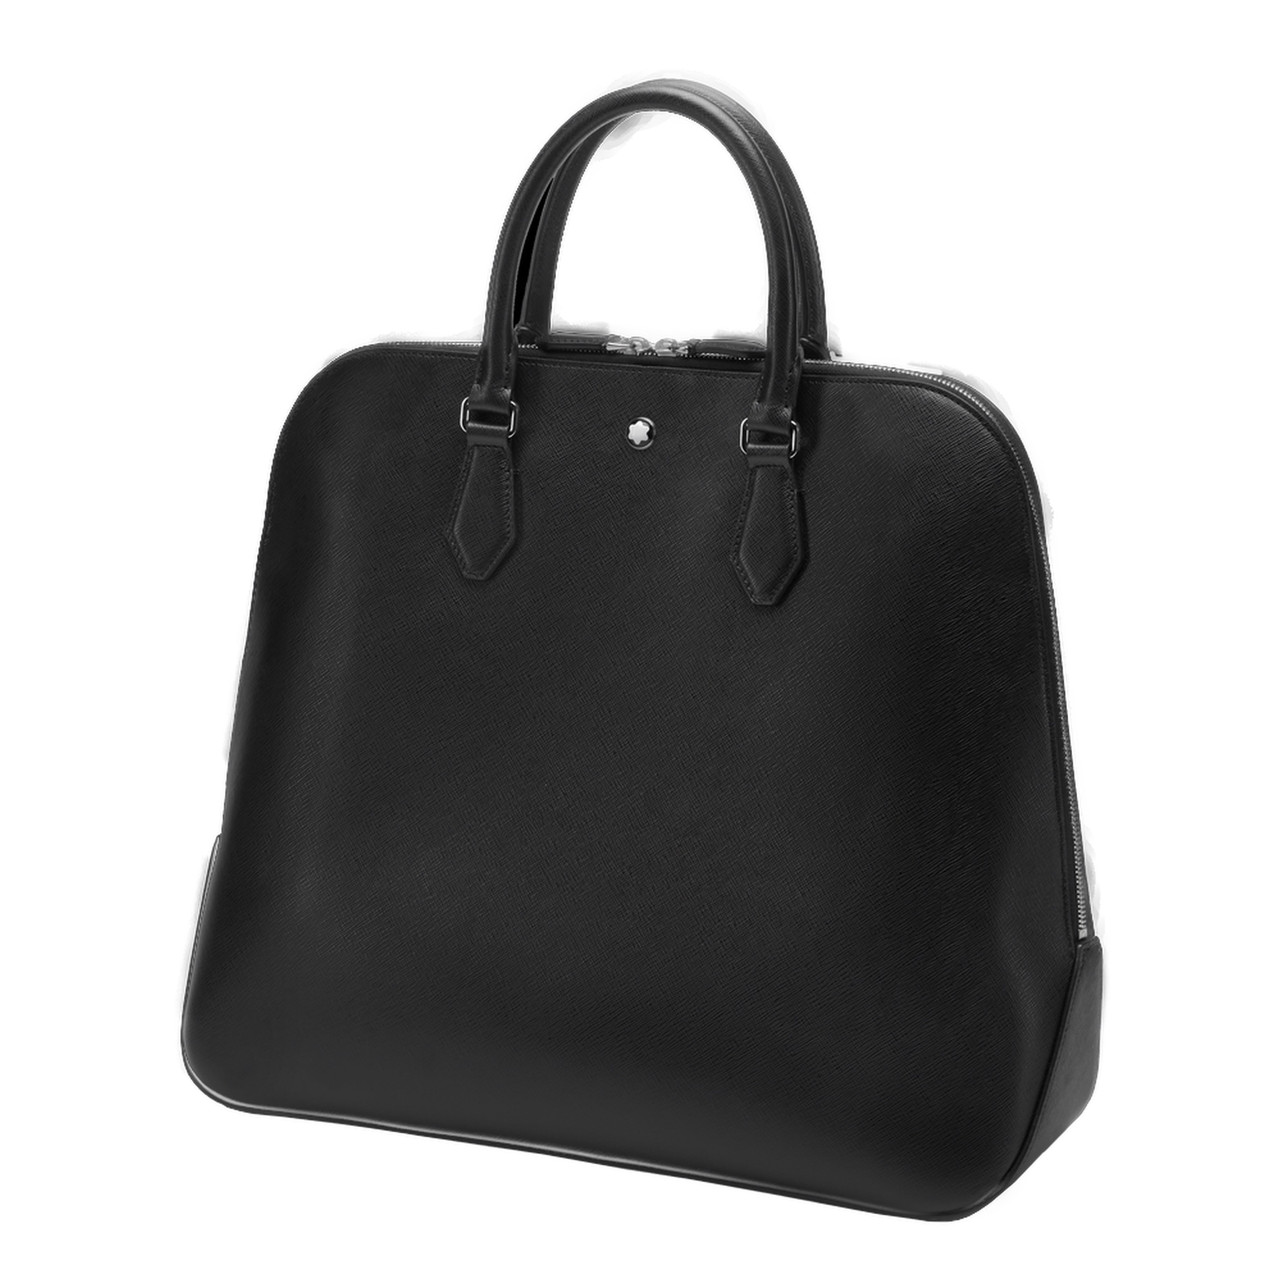 Genuine Montblanc For BMW Bowling Bag Handbag Holder Black 80 22 5